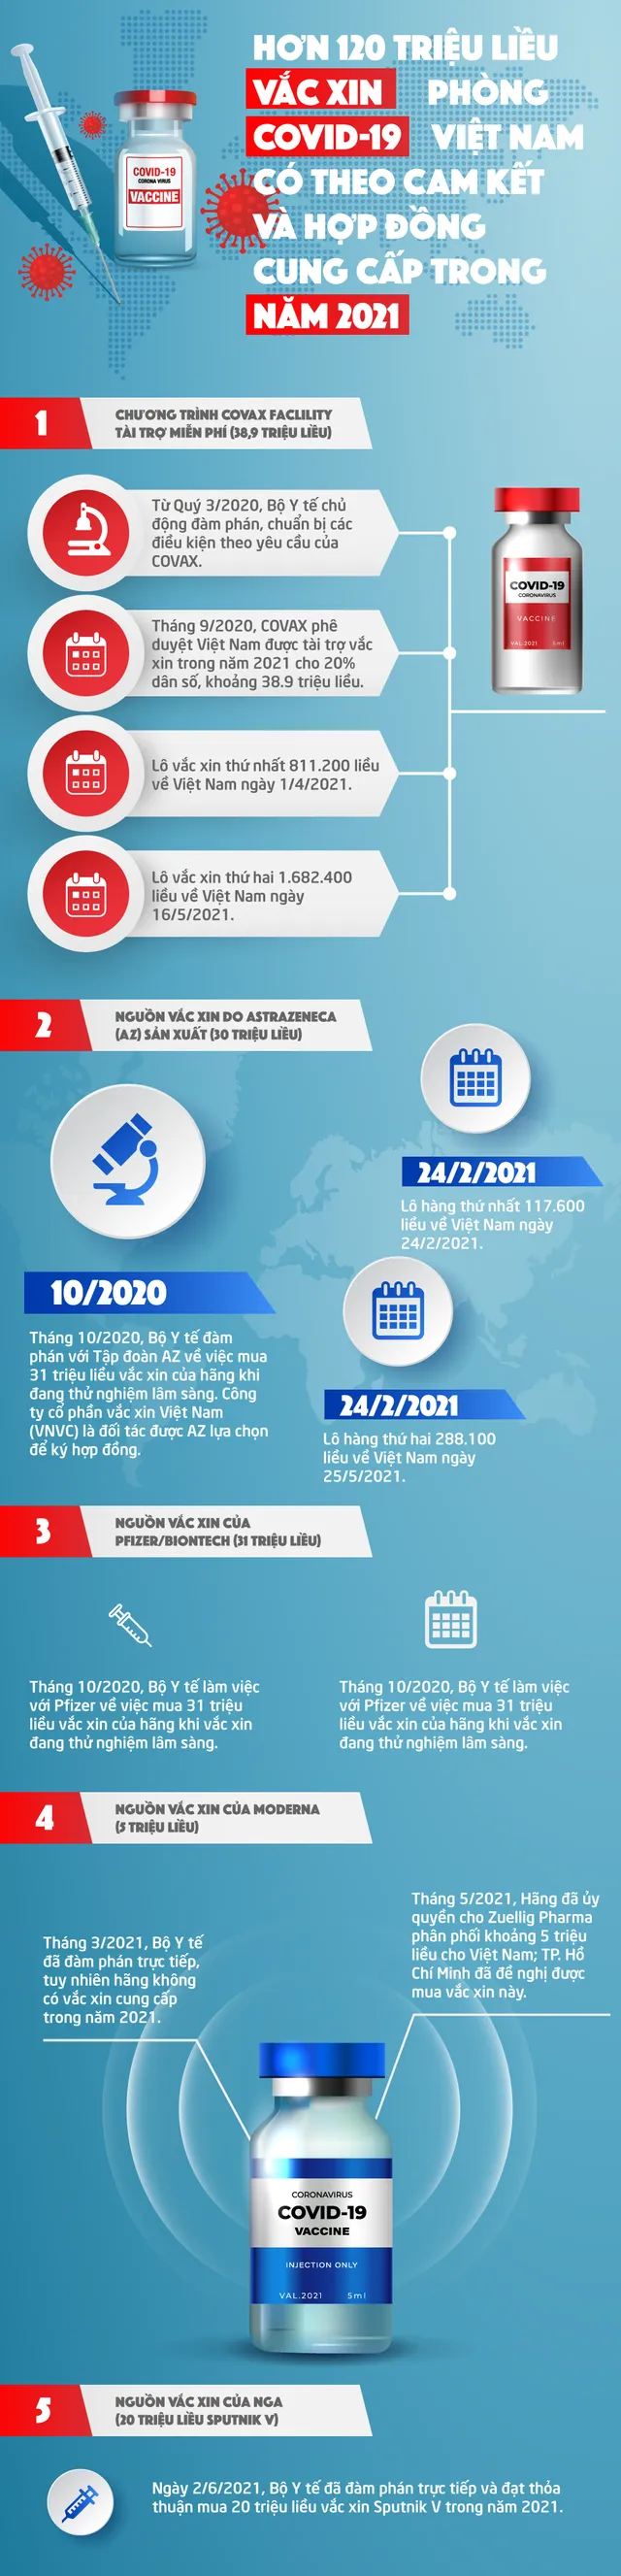 INFOGRAPHIC: Hơn 120 triệu liều vaccine phòng COVID-19 về Việt Nam trong năm 2021 - Ảnh 1.